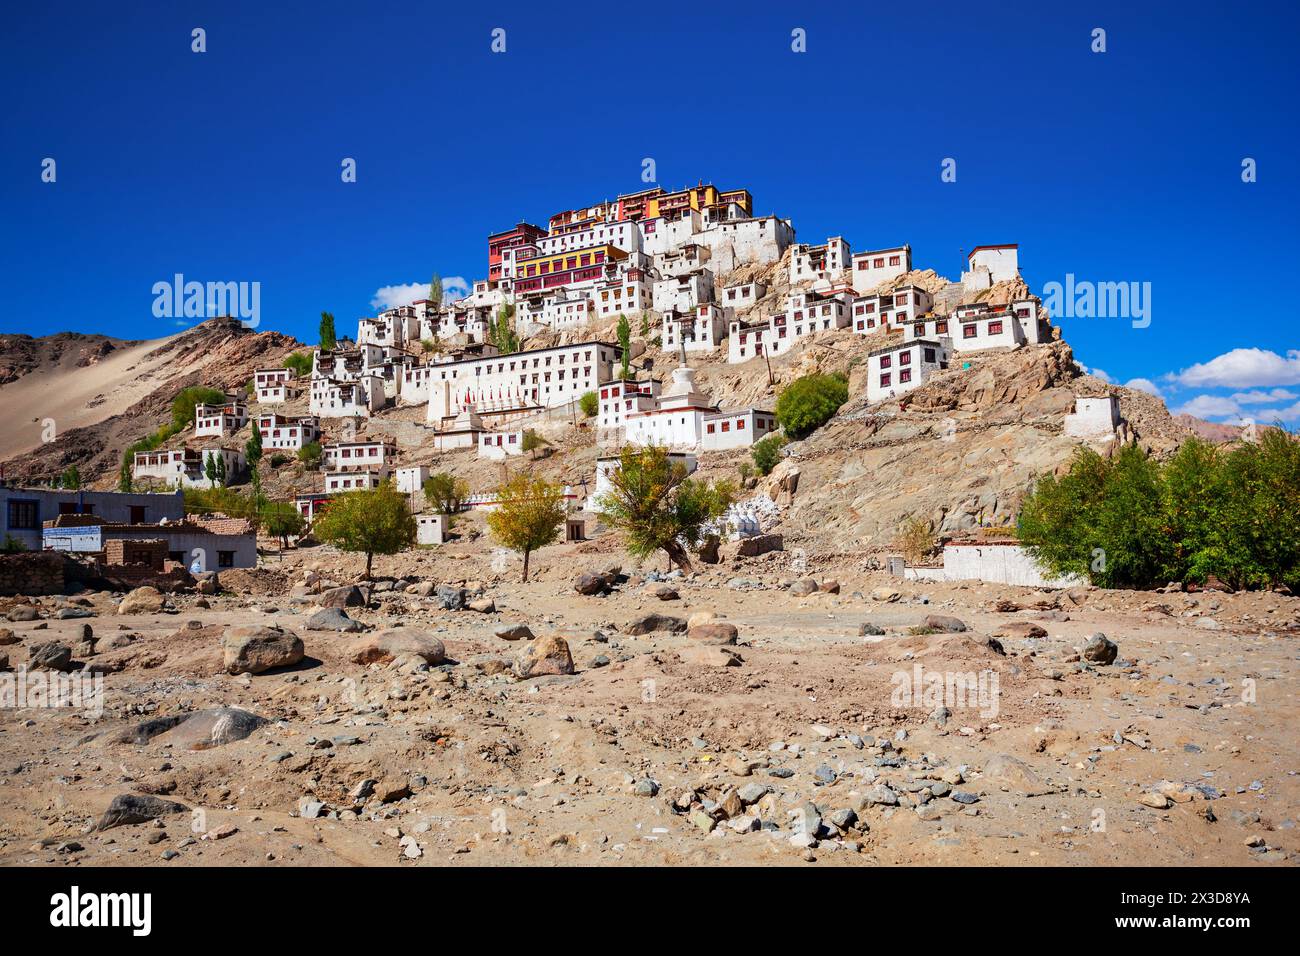 Le monastère Thikse Gompa ou Thiksey est un monastère bouddhiste tibétain à Thiksey, près de Leh, dans le Ladakh, dans le nord de l'Inde Banque D'Images